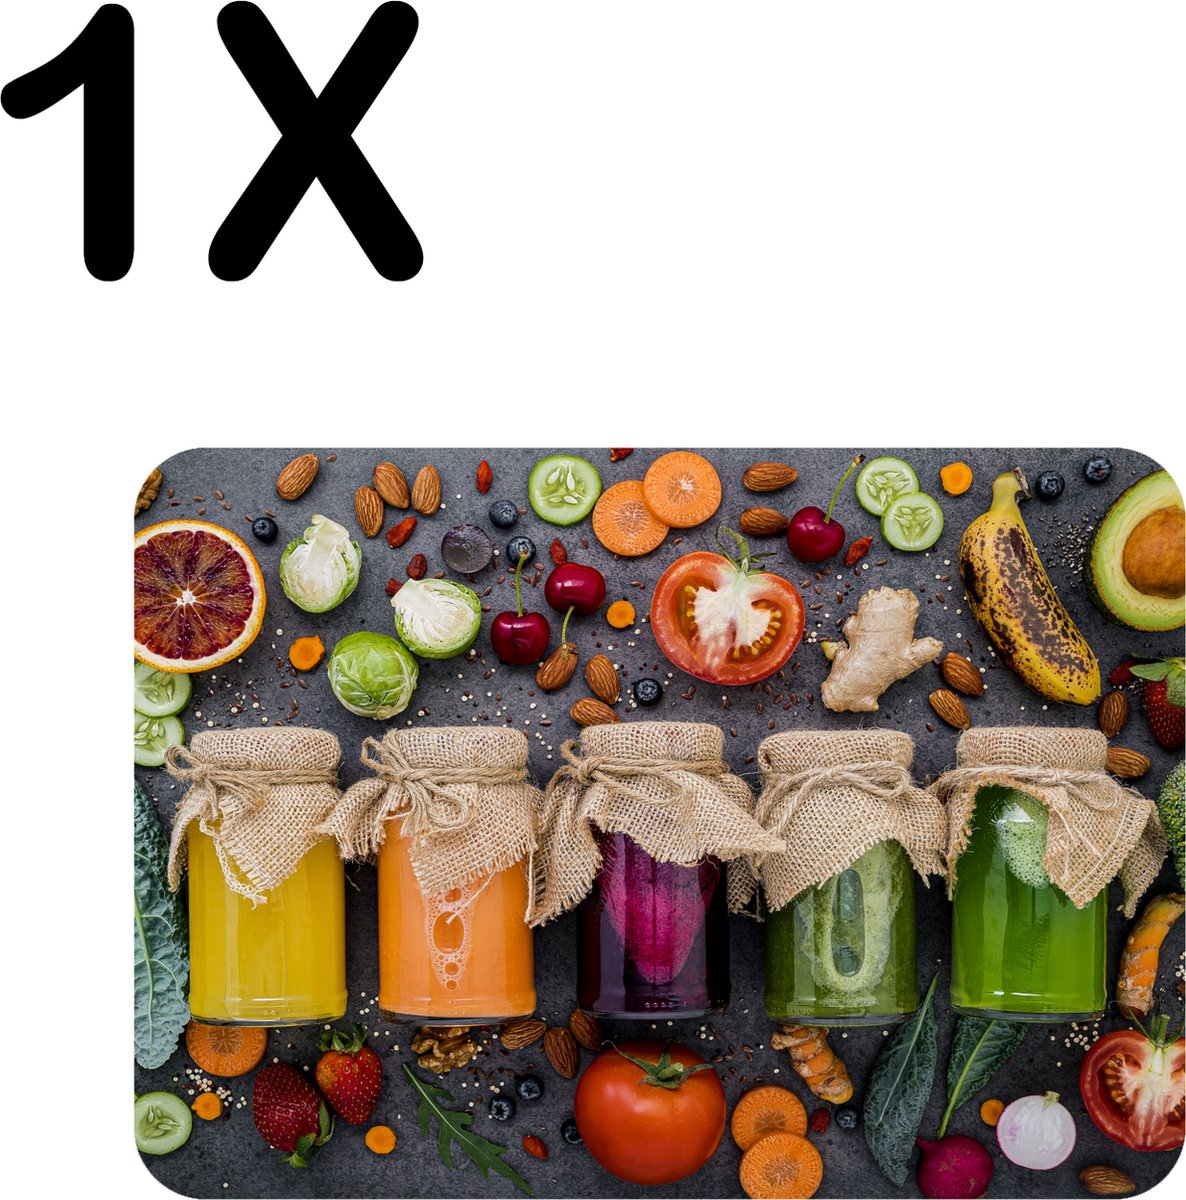 BWK Flexibele Placemat - Kleurrijke Potten met Groente en Fruit - Set van 1 Placemats - 40x30 cm - PVC Doek - Afneembaar